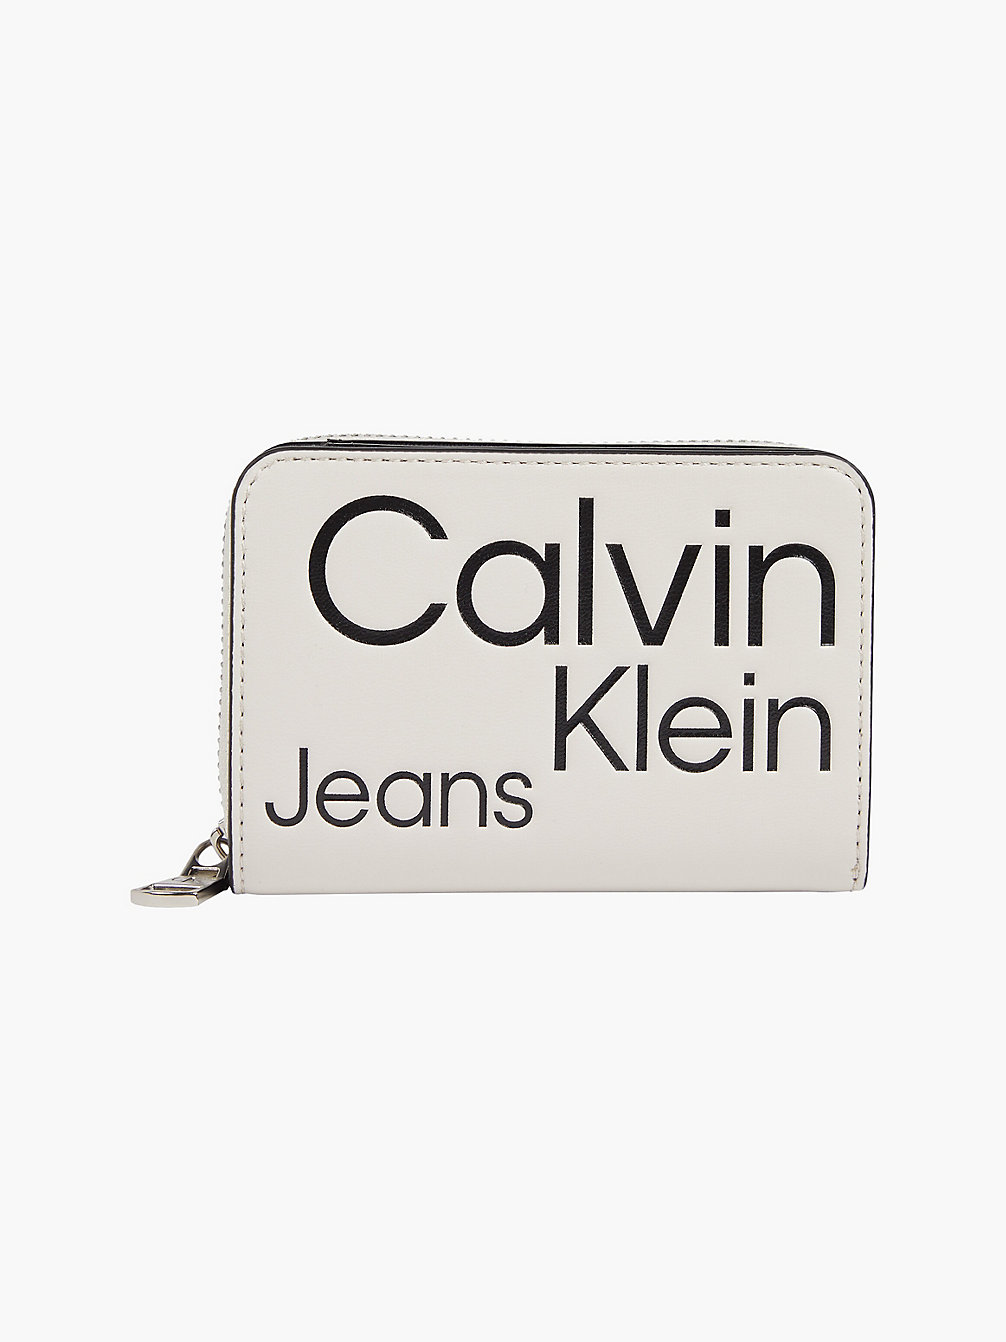 BEIGE AOP Portafoglio Rfid Con Zip Integrale E Logo undefined donna Calvin Klein